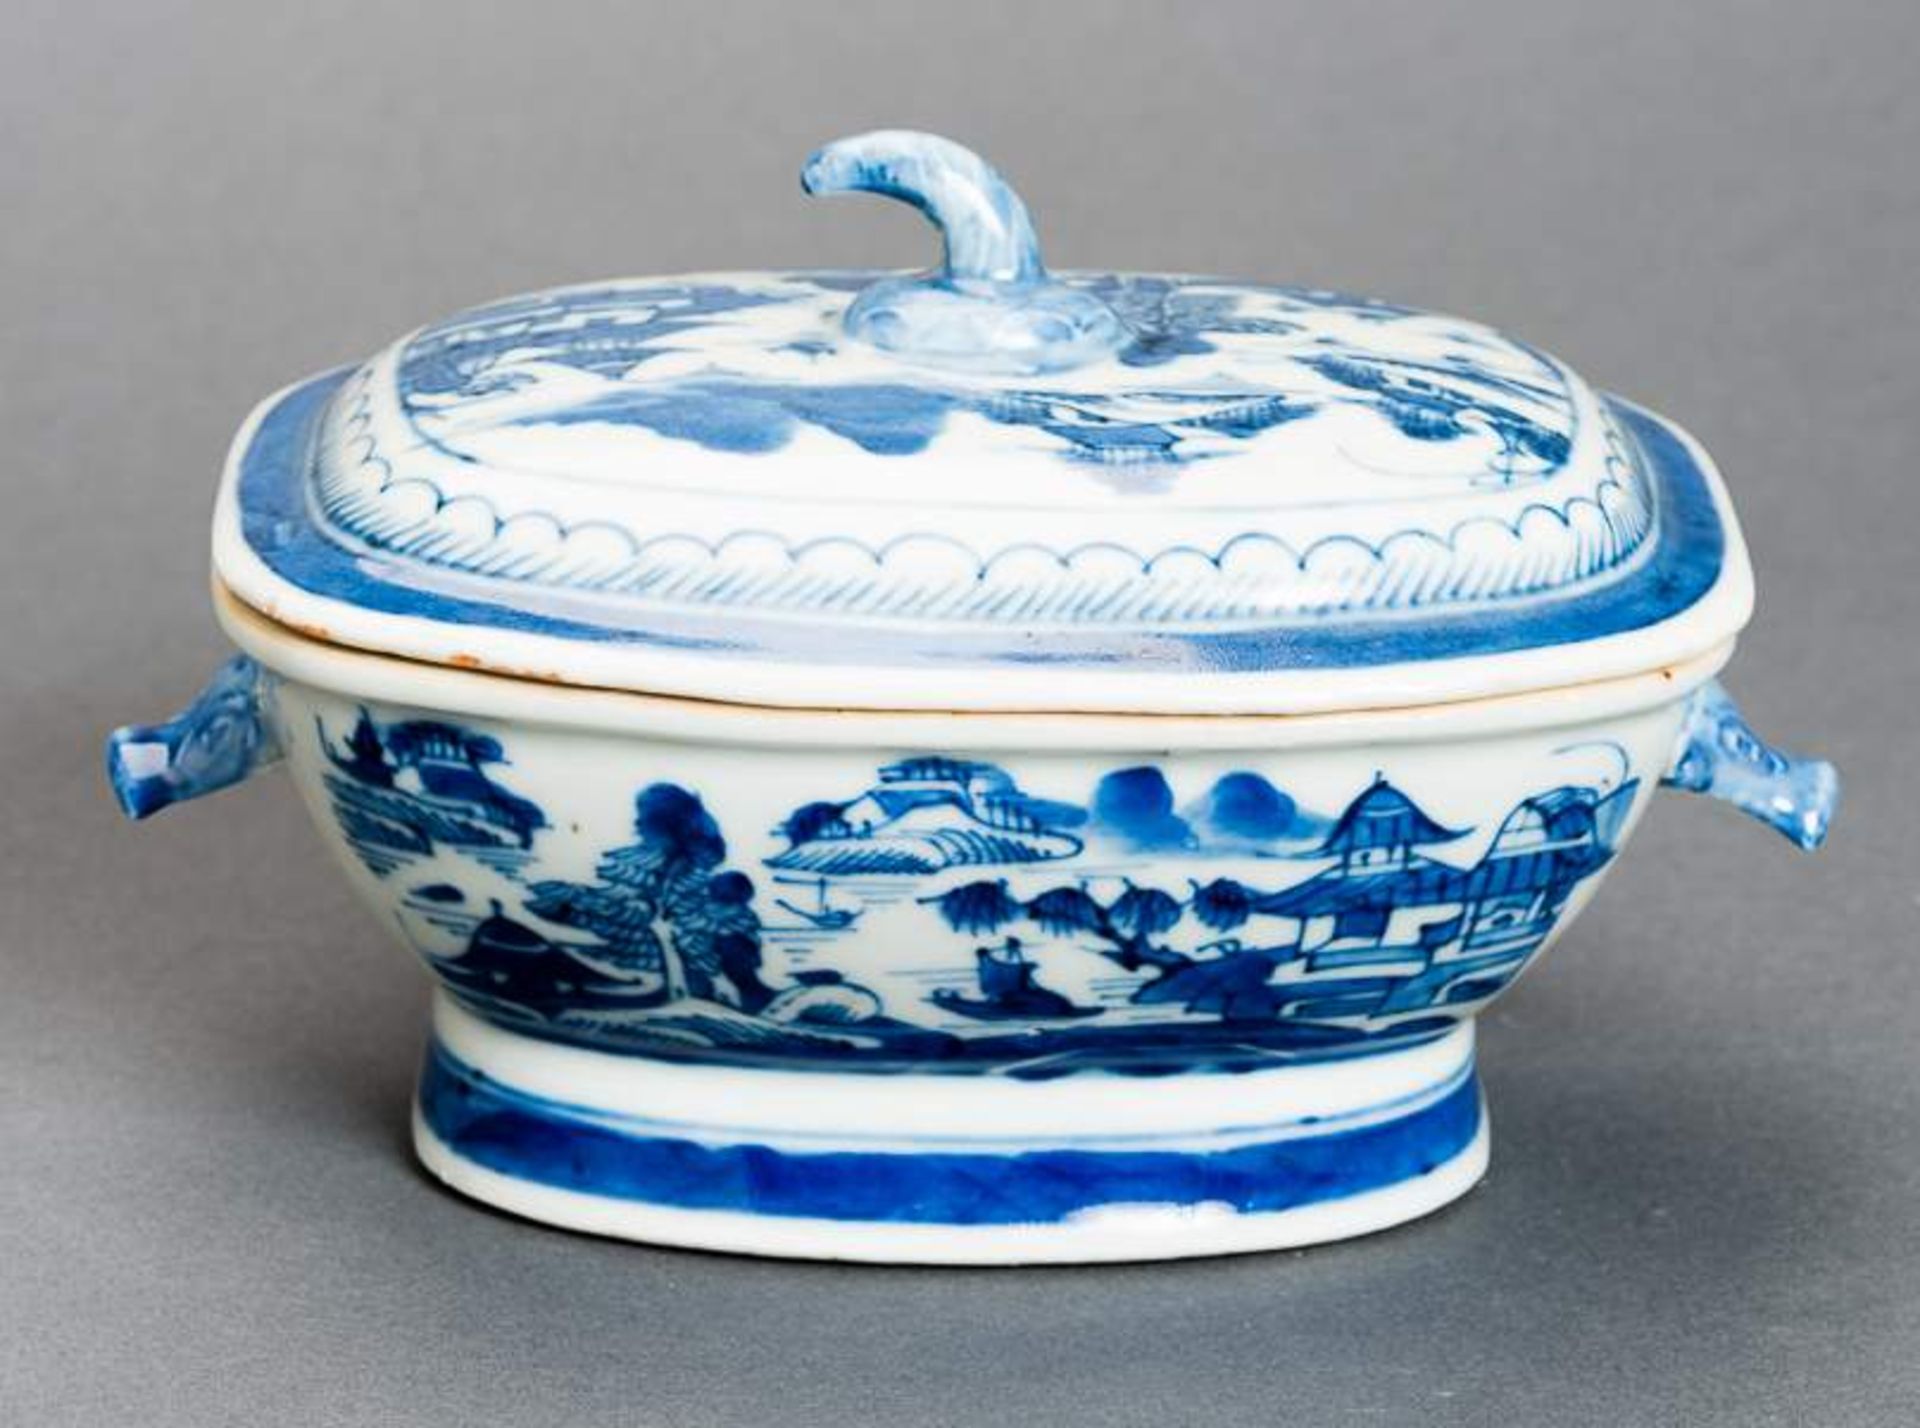 DECKELSCHALE Blauweiß-Porzellan. China, Qing-Dynastie, 19. Jh. Diese sehr ansprechende oval- - Image 10 of 11